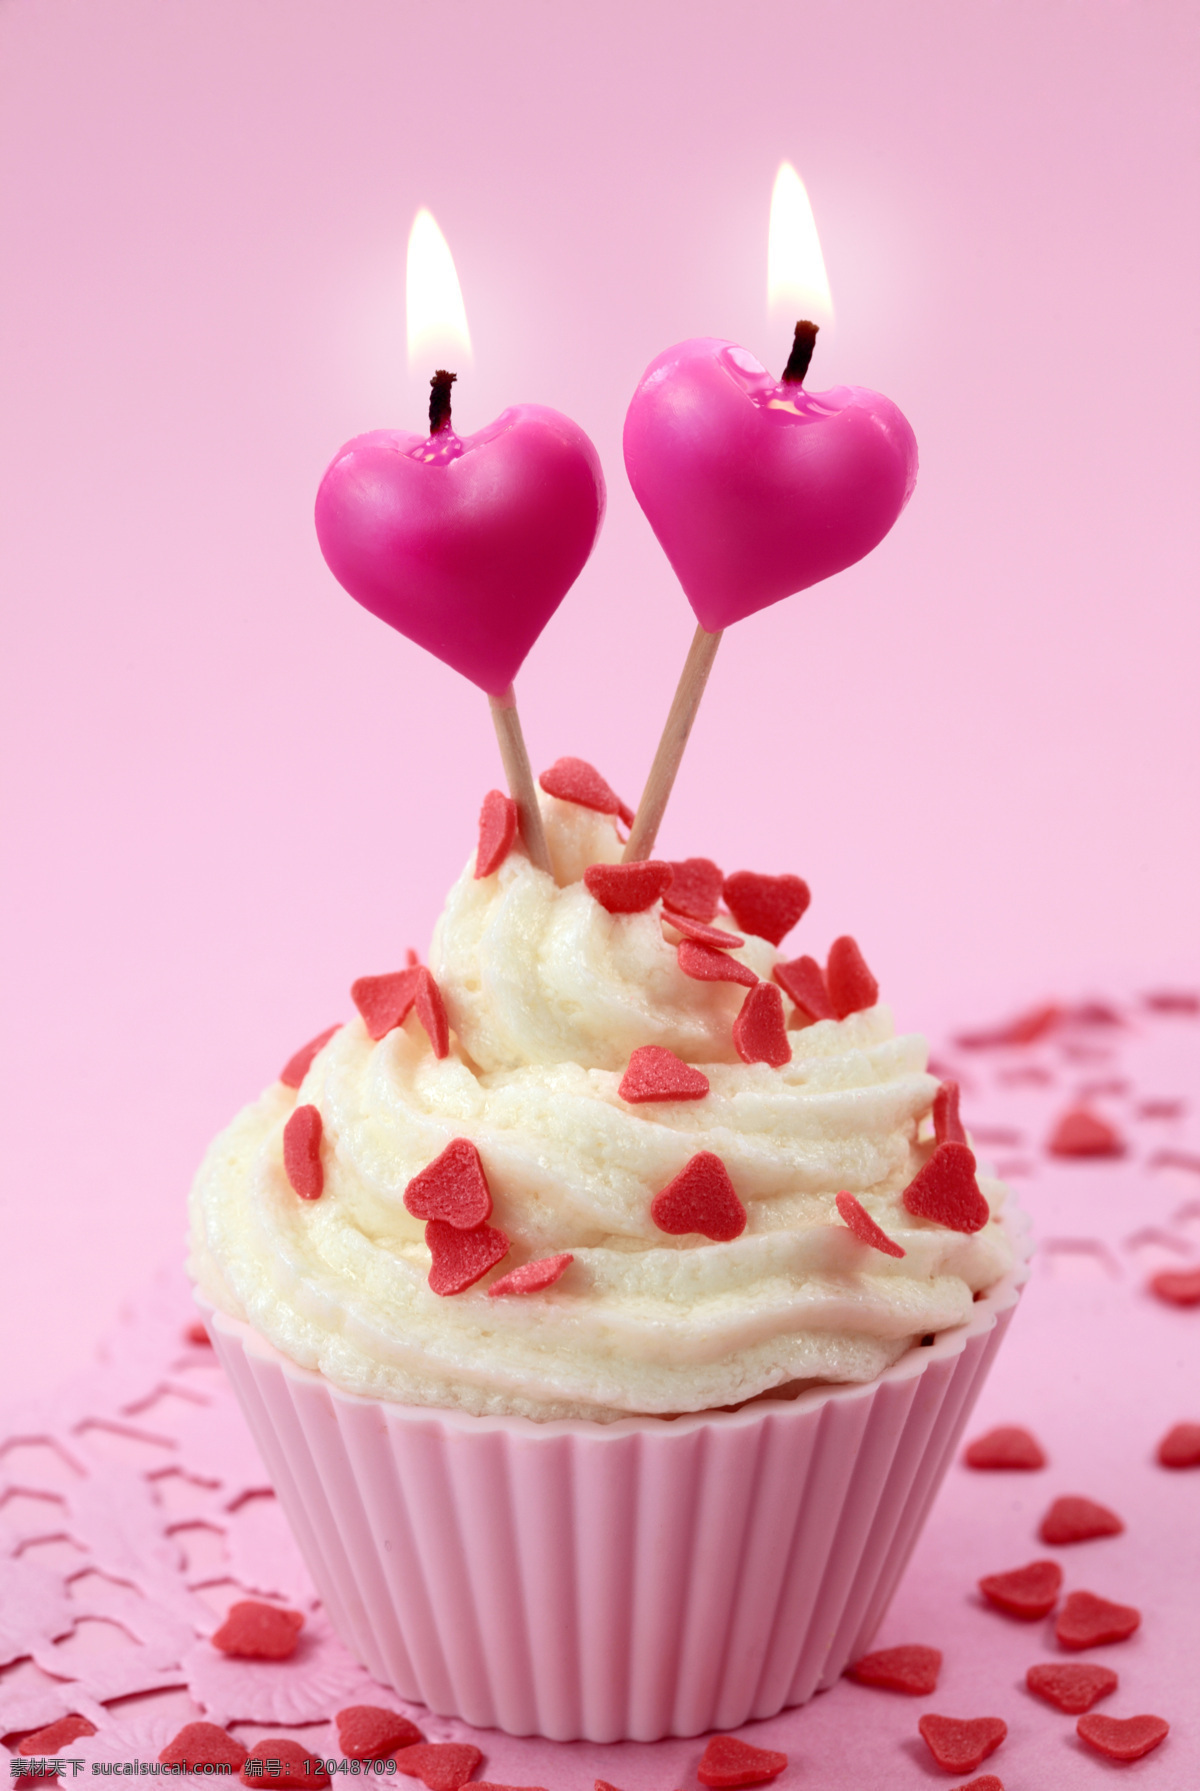 爱心 小 蛋糕 情人节 甜蜜 浪漫 食物 甜品 蜡烛 爱心蜡烛 爱心图片 生活百科